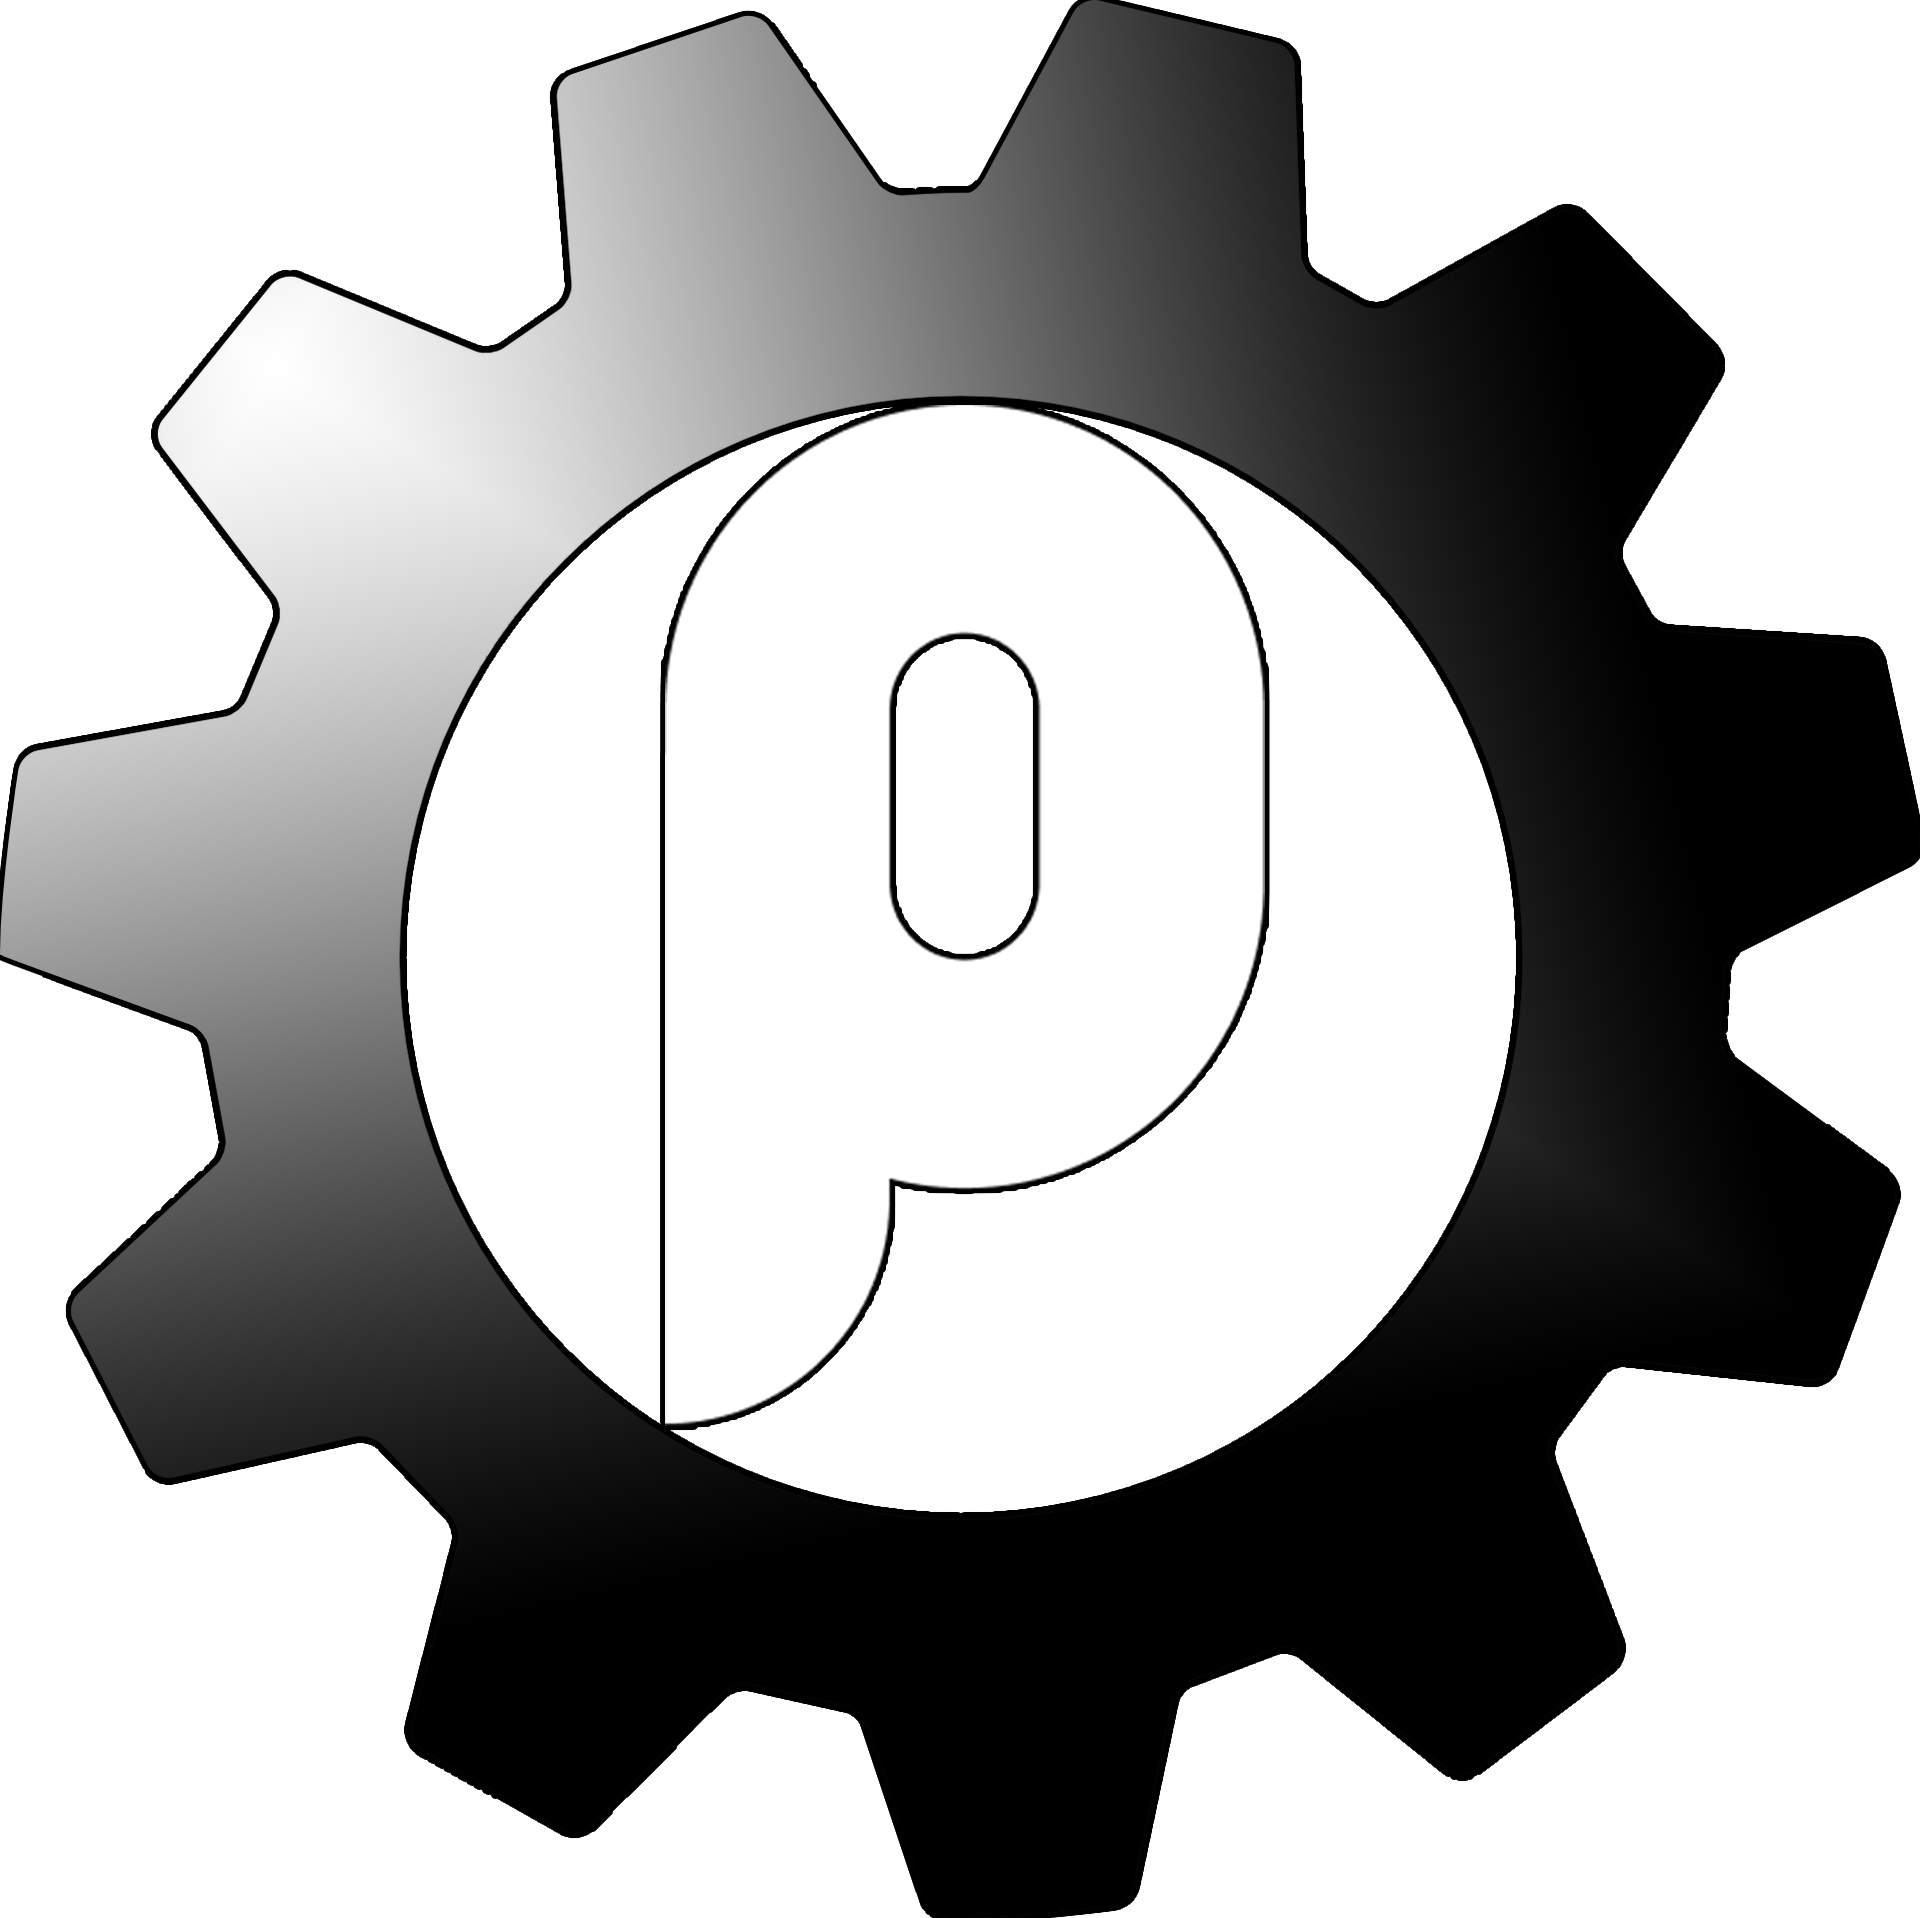 pt logo